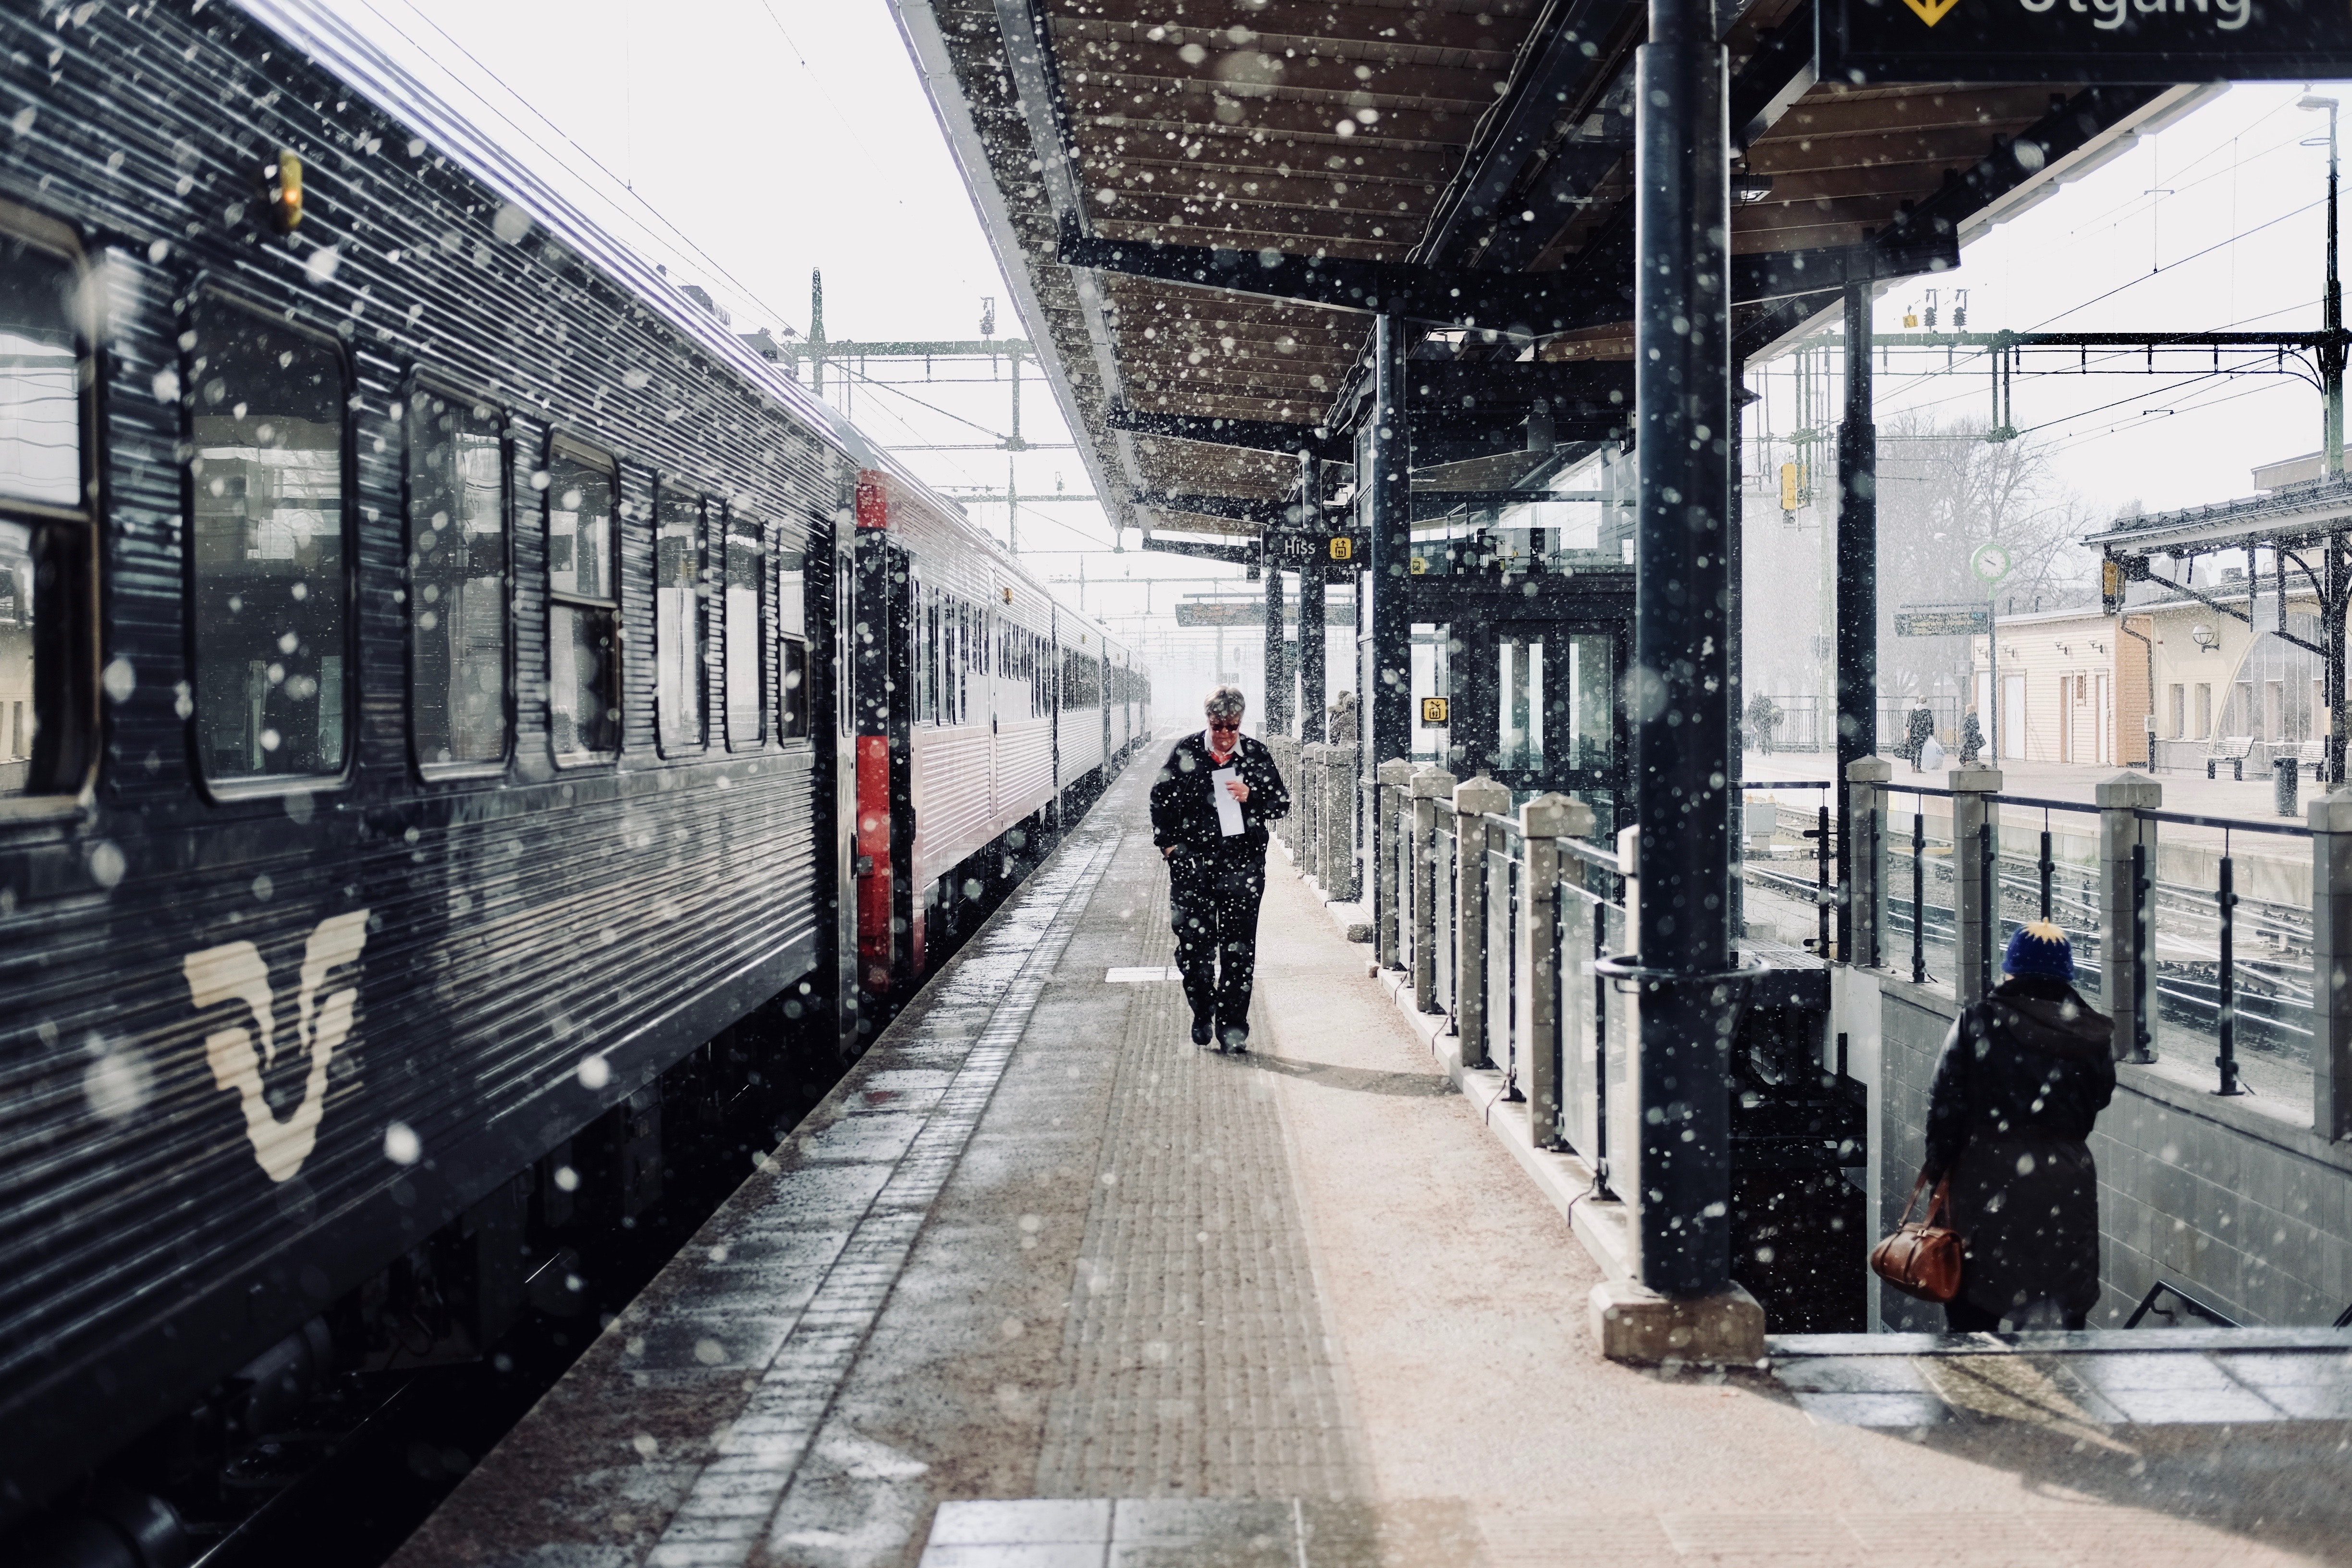 A man walking beside a train during snowfall